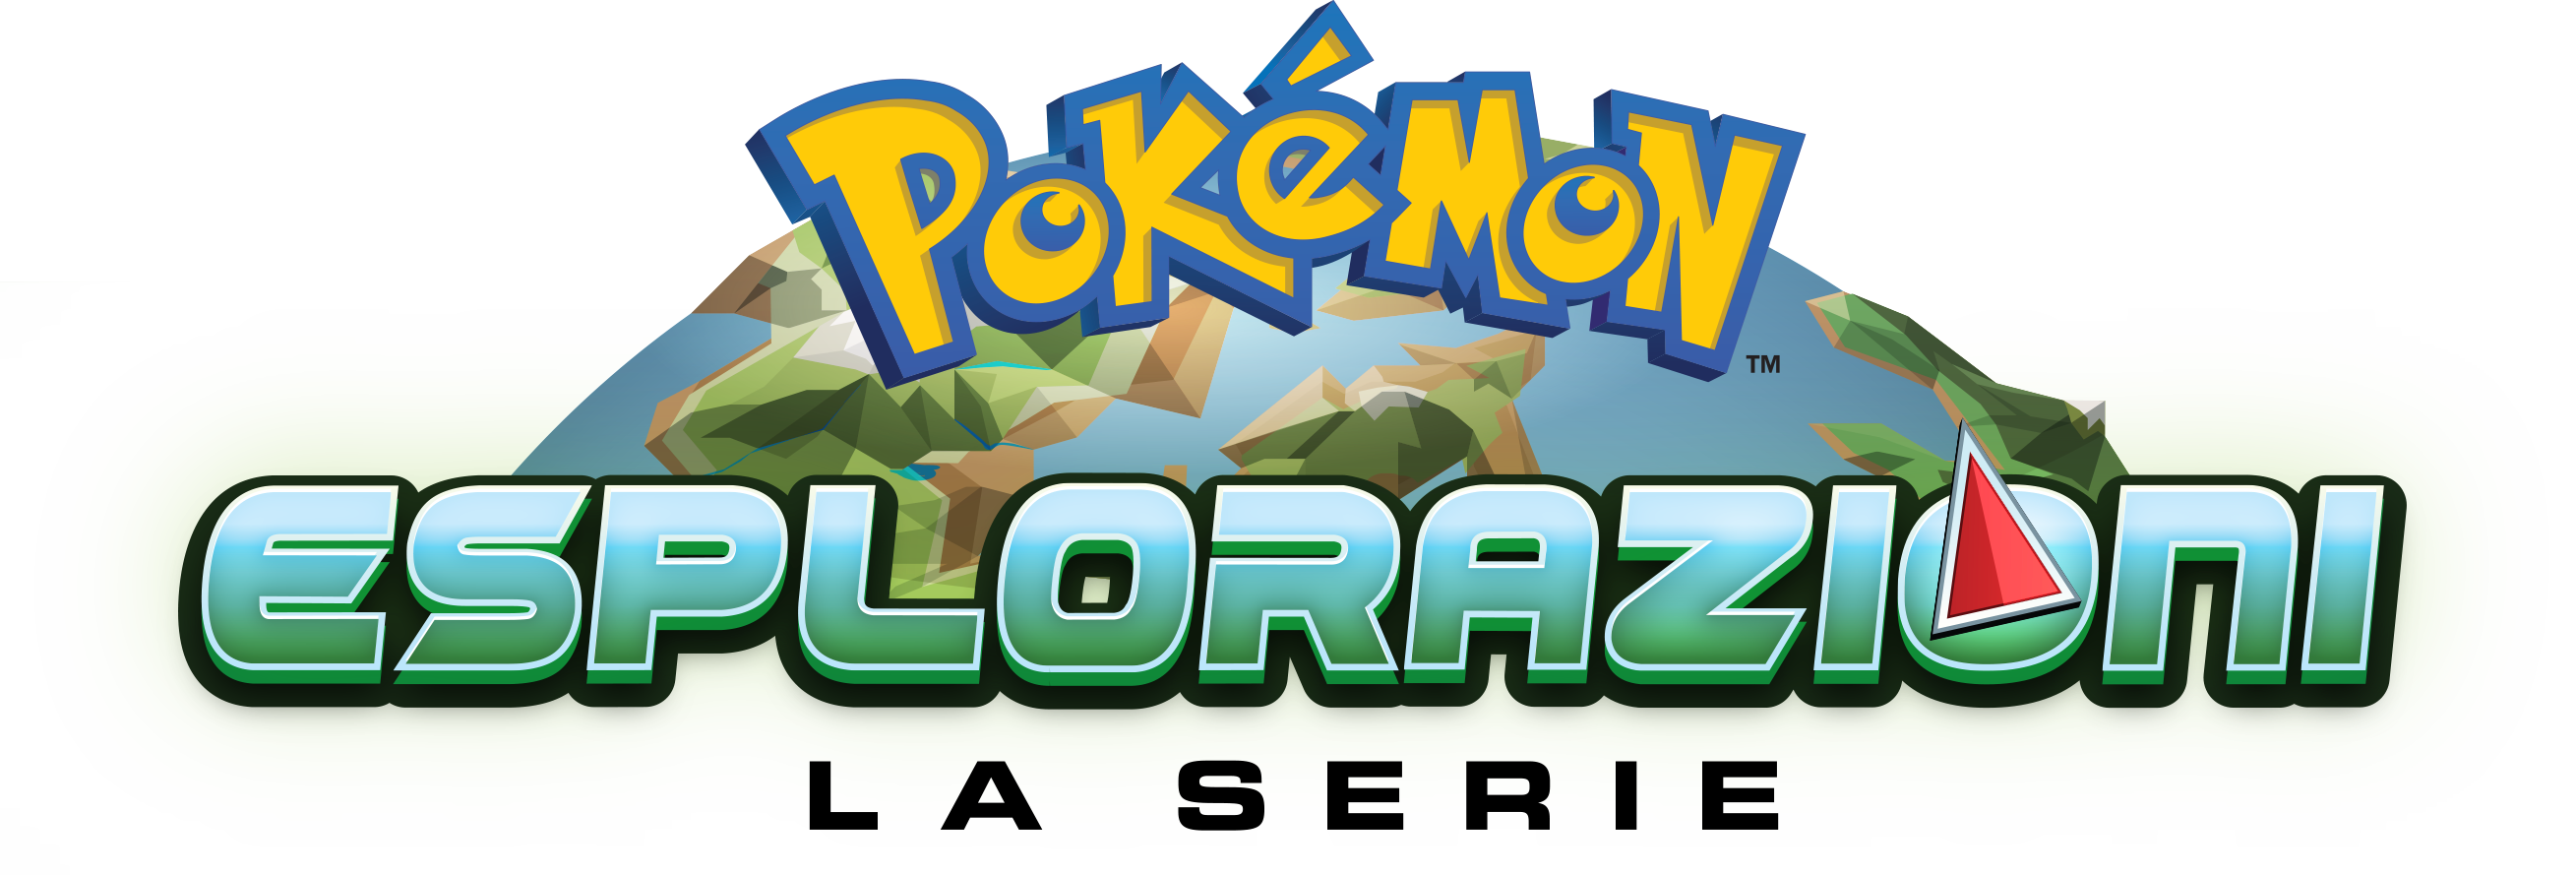 pokemon_esplorazioni_logo